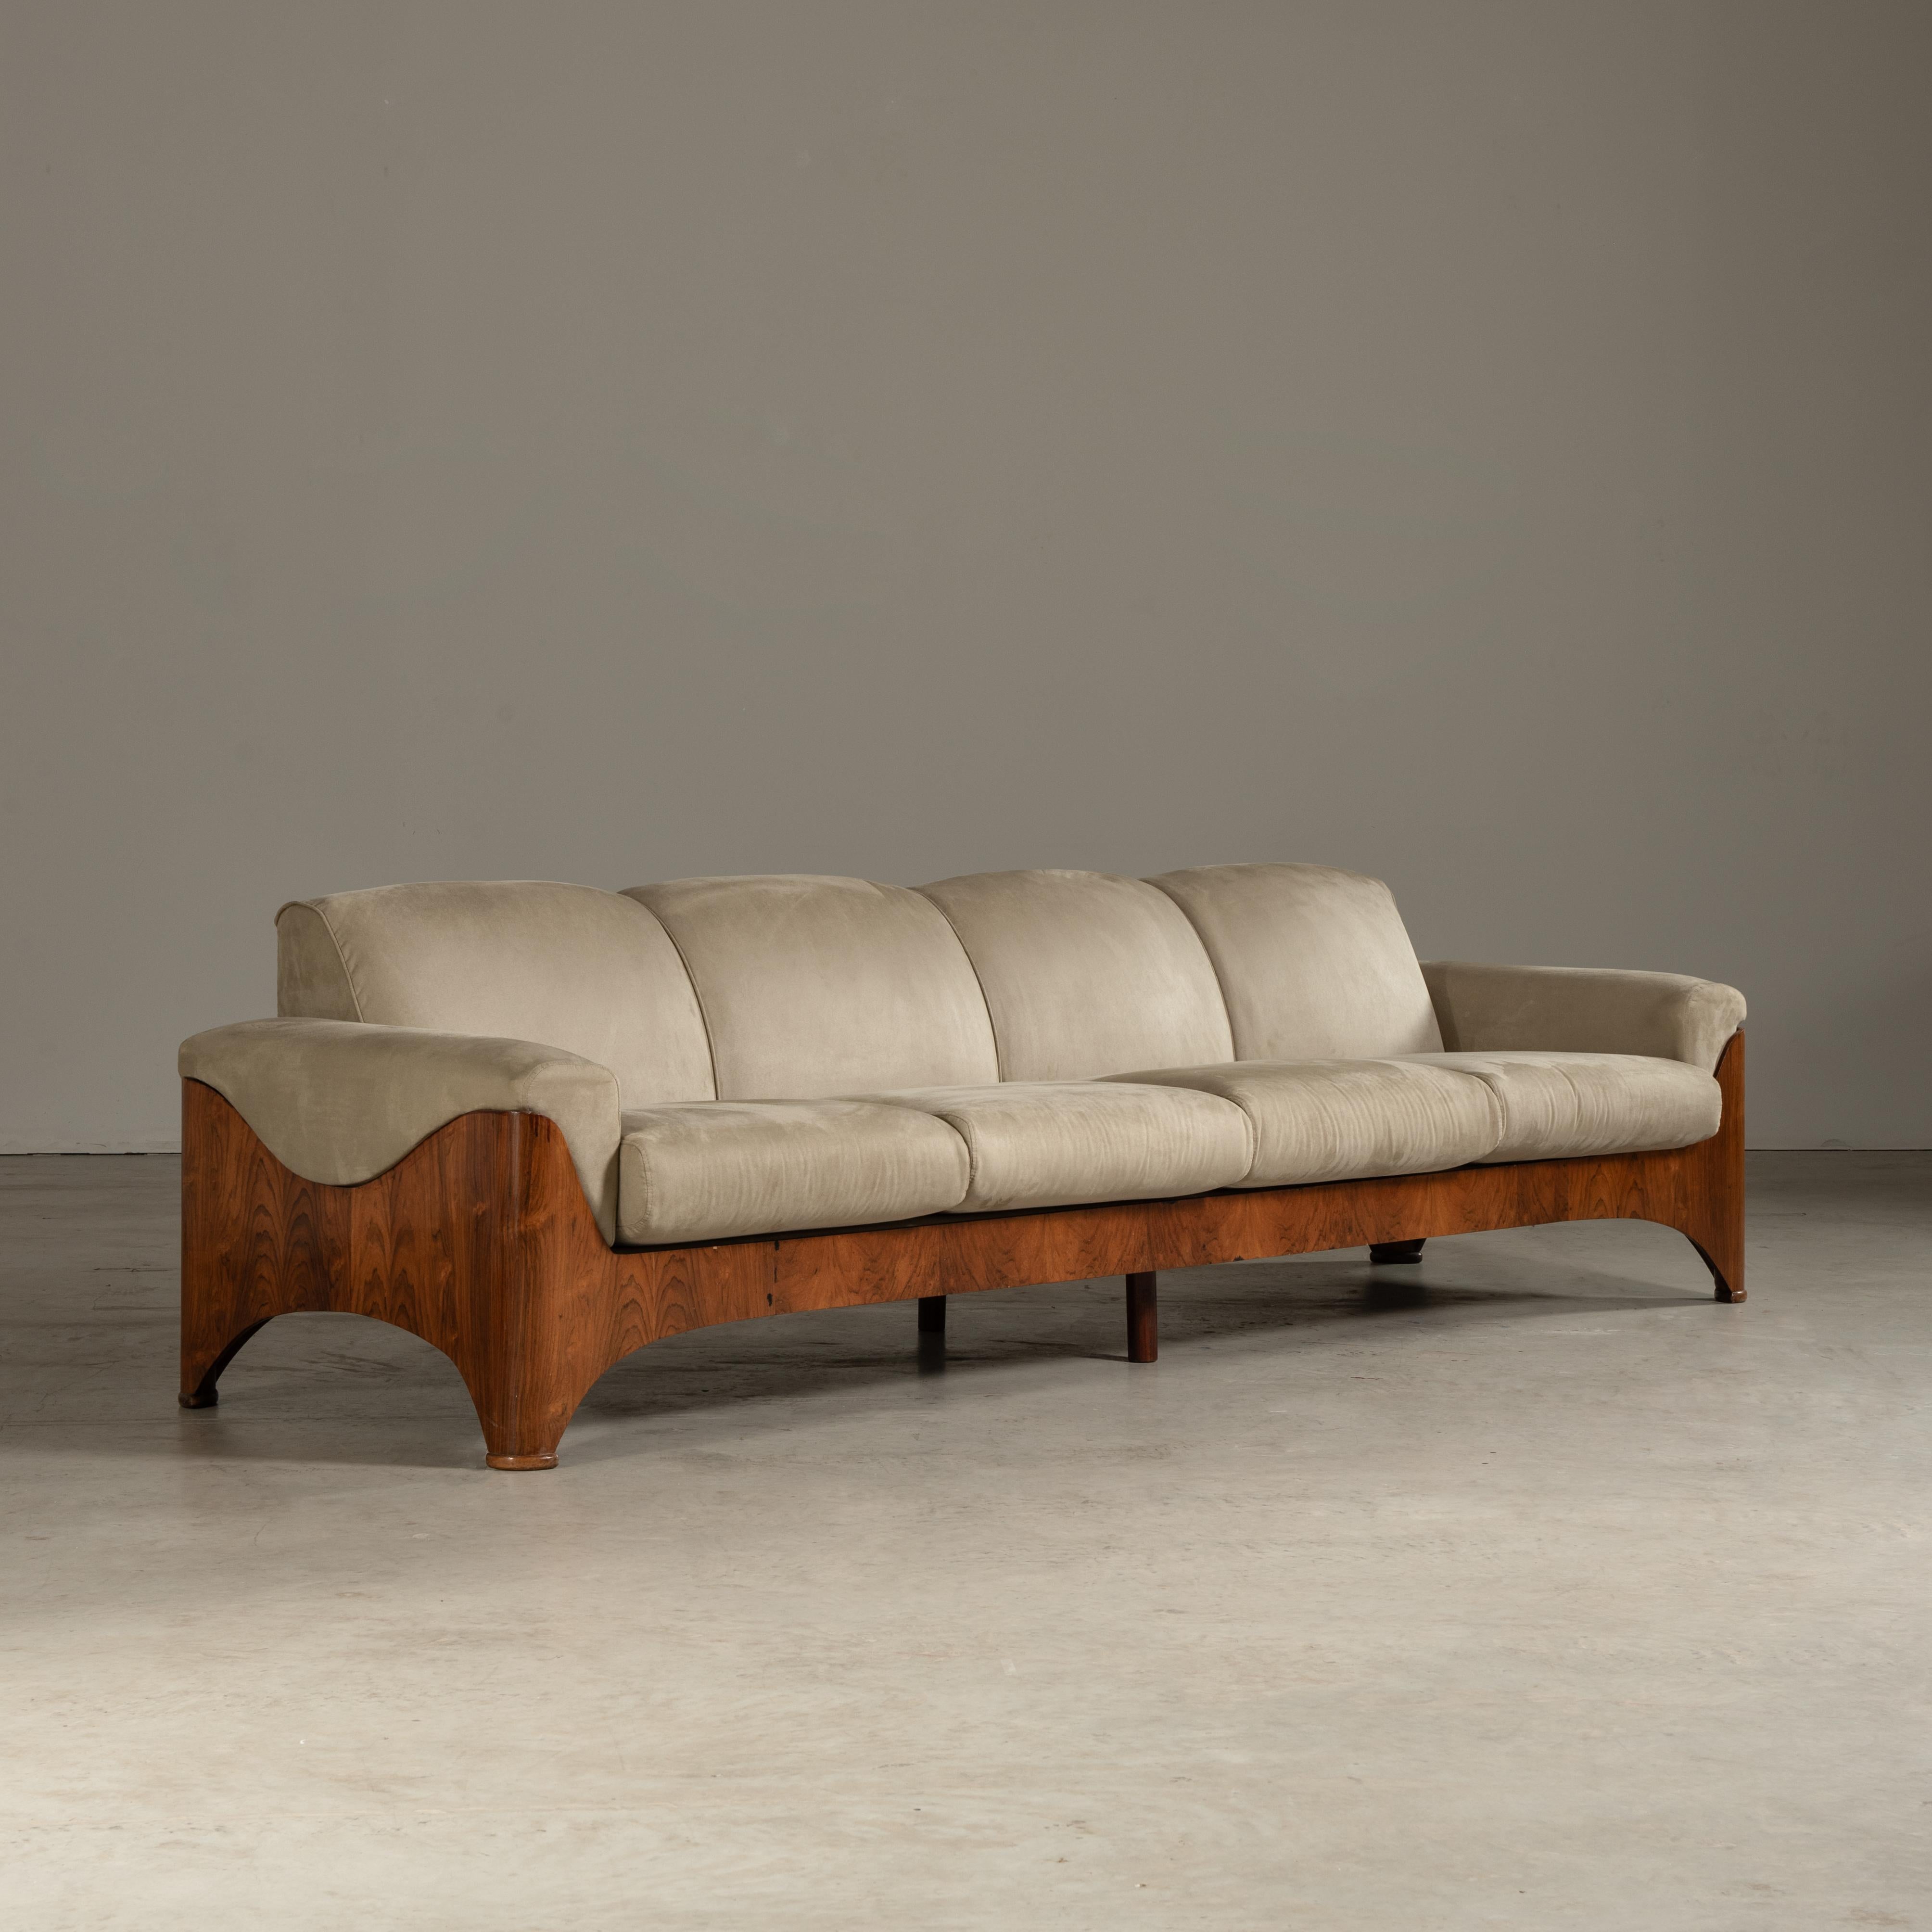 Le canapé présenté dans les images respire la sophistication et le design nuancé du style moderne brésilien du milieu du siècle, prédominant dans les années 1960. Si le designer reste inconnu, la pièce elle-même en dit long sur l'attention portée